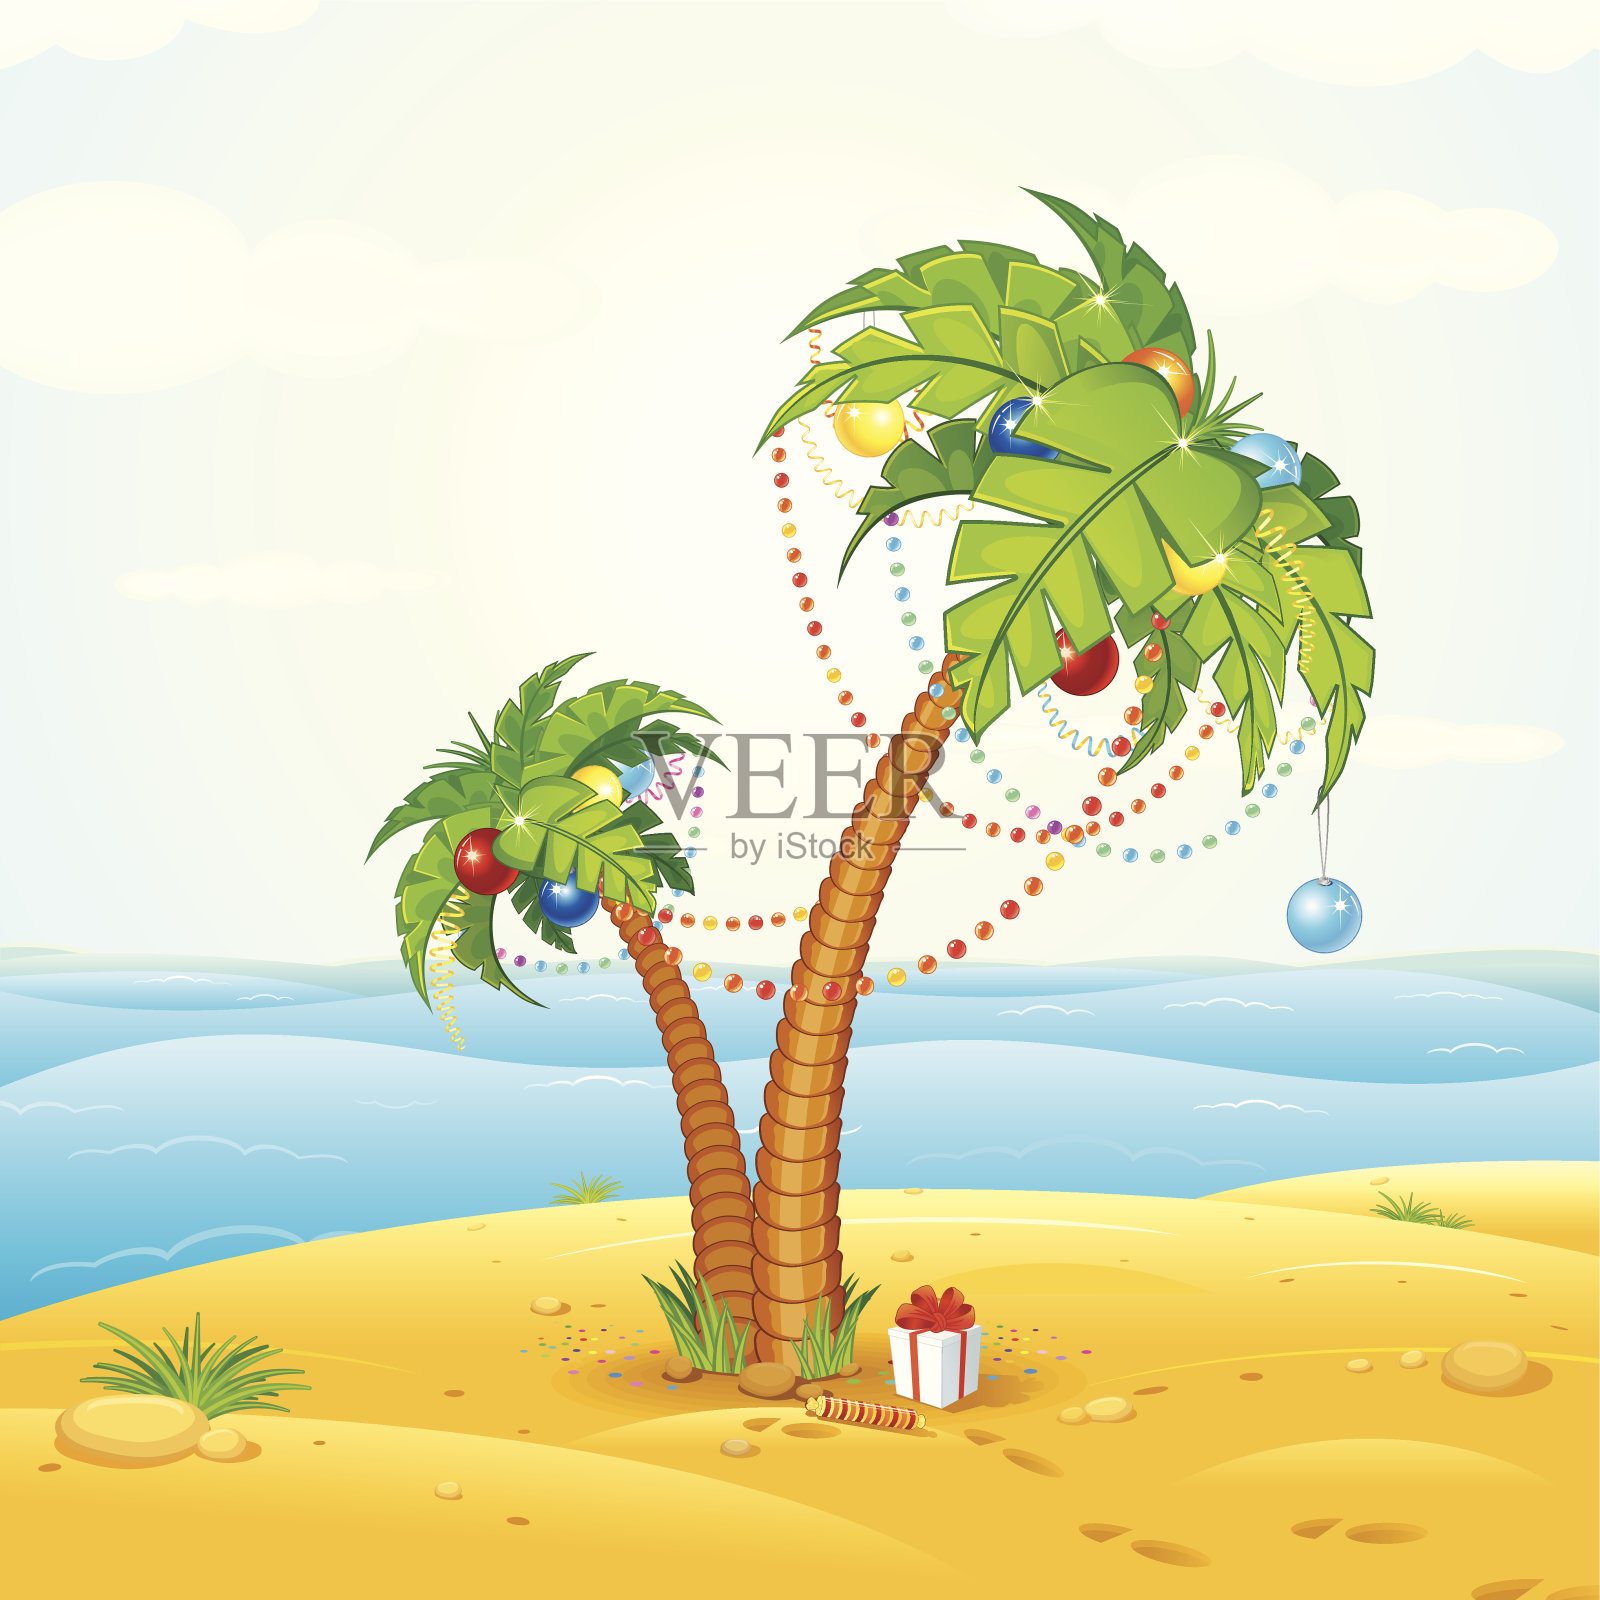 一棵为圣诞节装饰的棕榈树插画图片素材